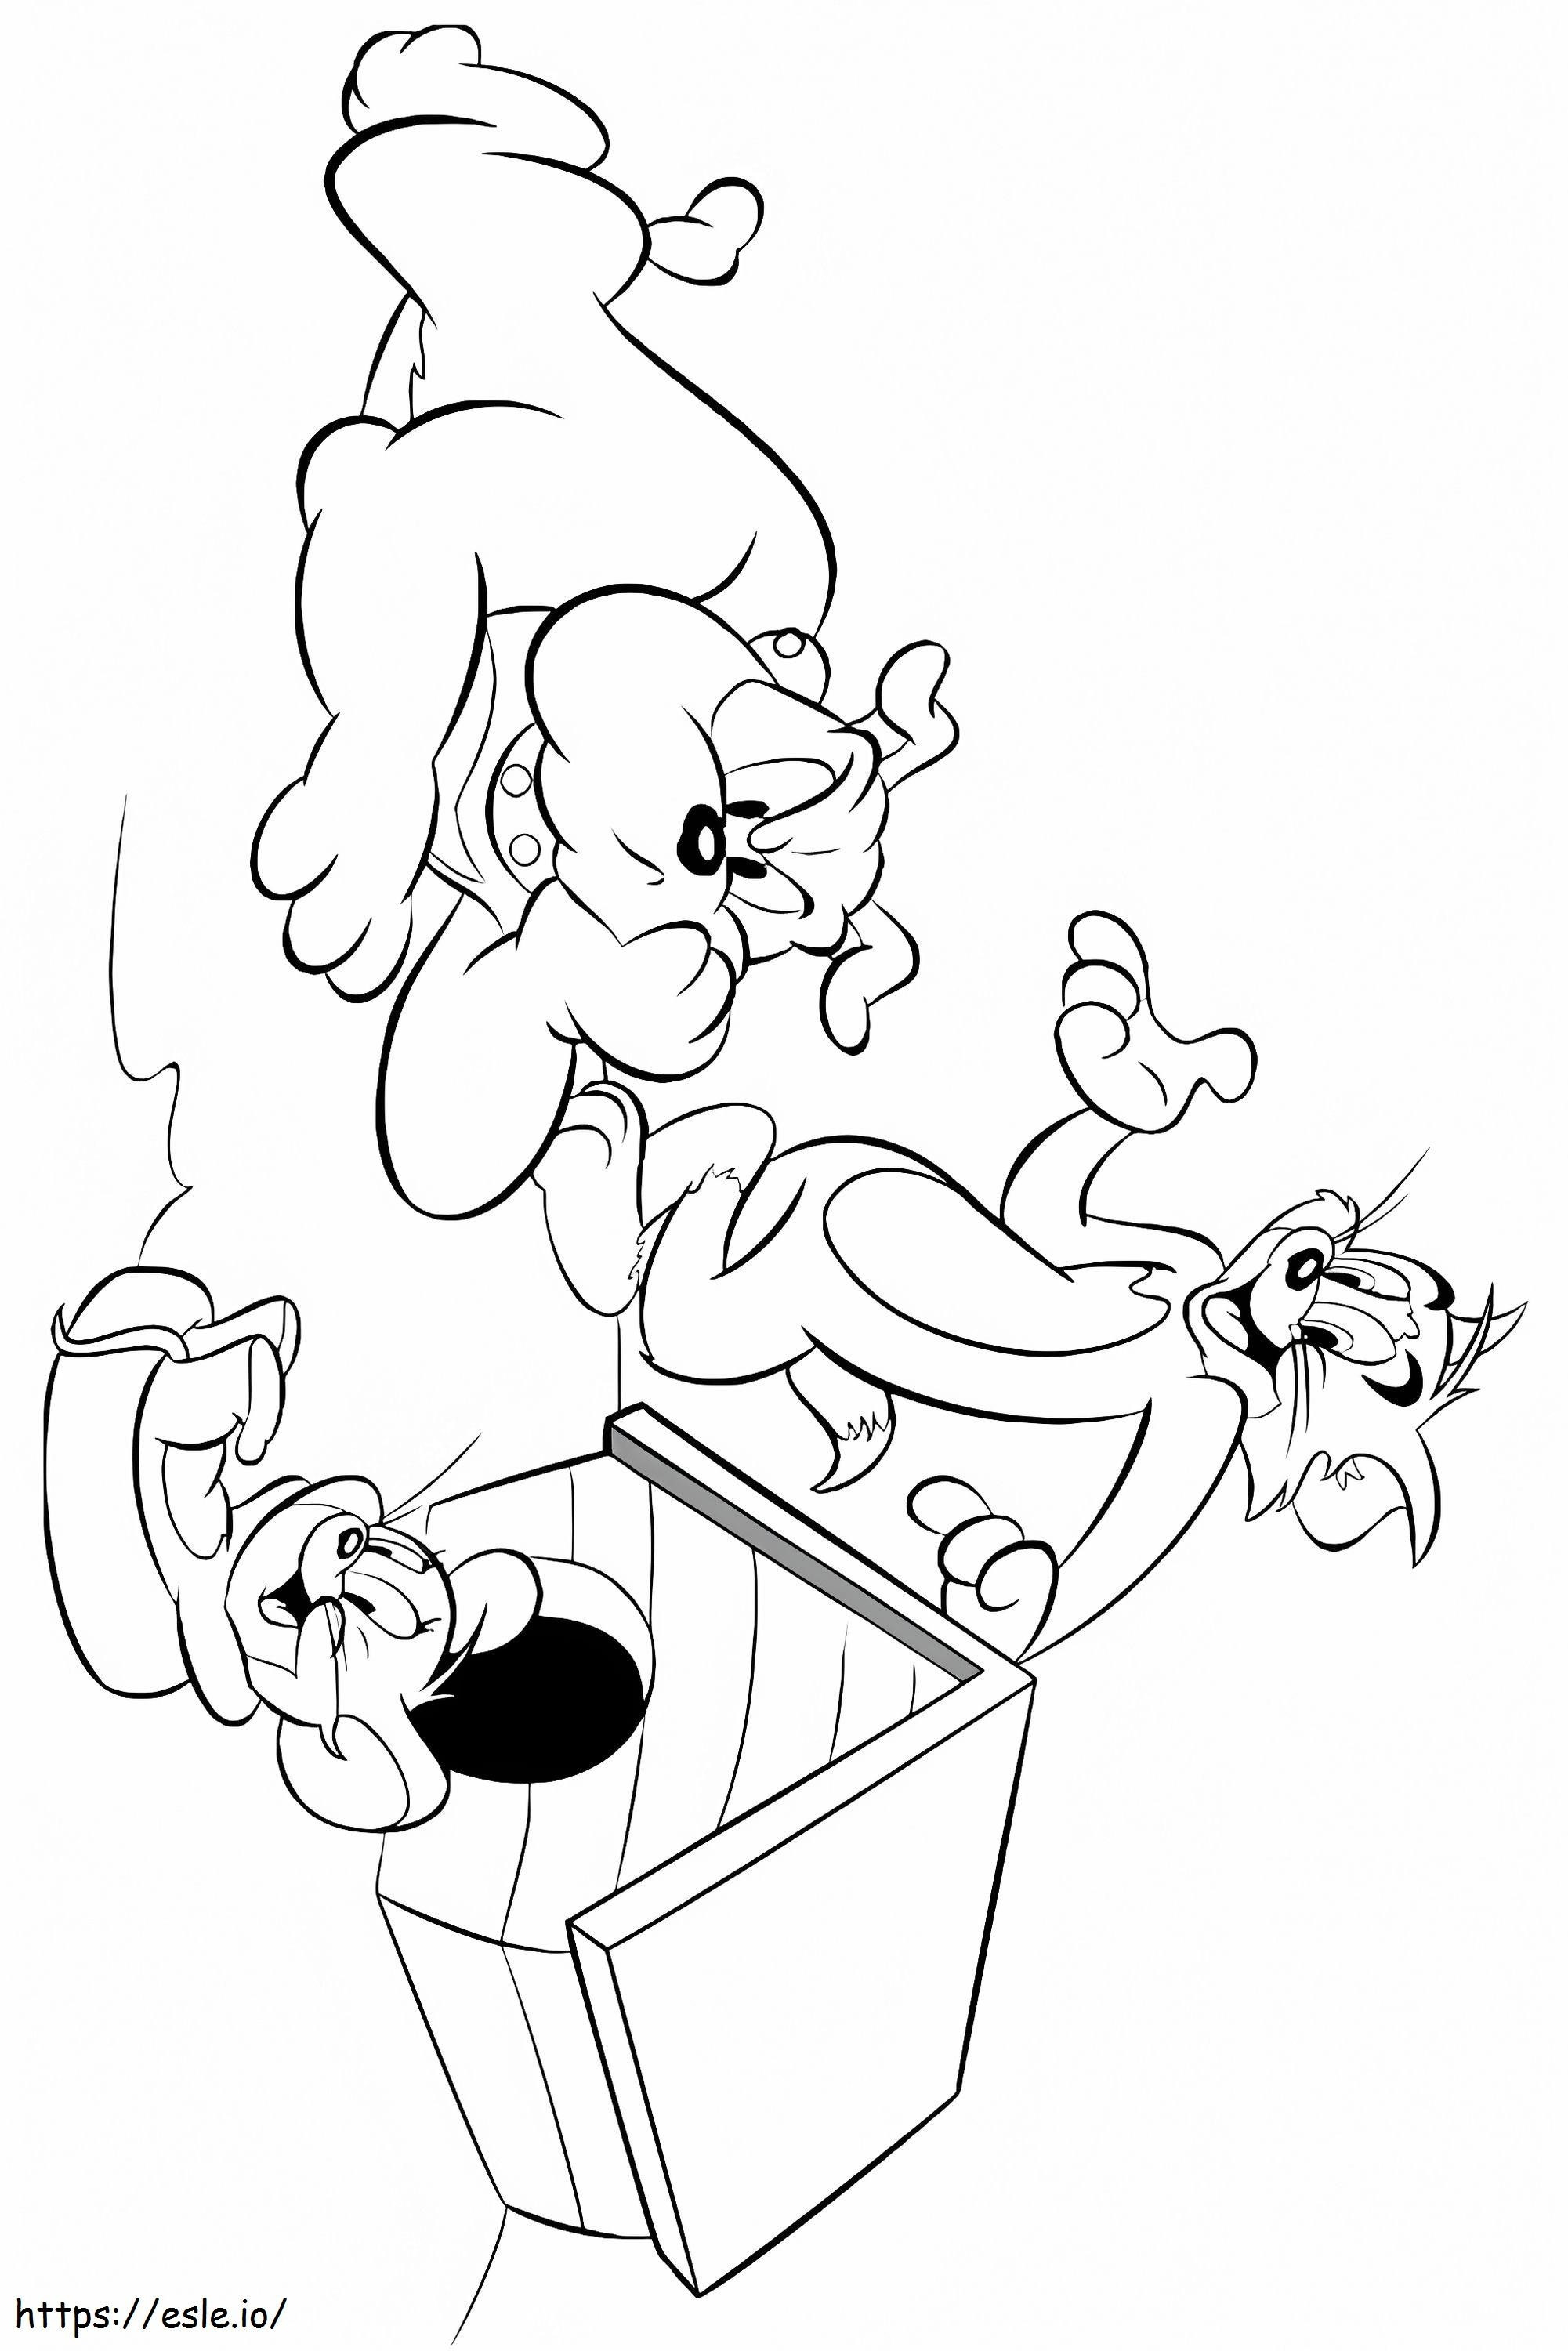  Tom und Jerry Charaktere A4 ausmalbilder